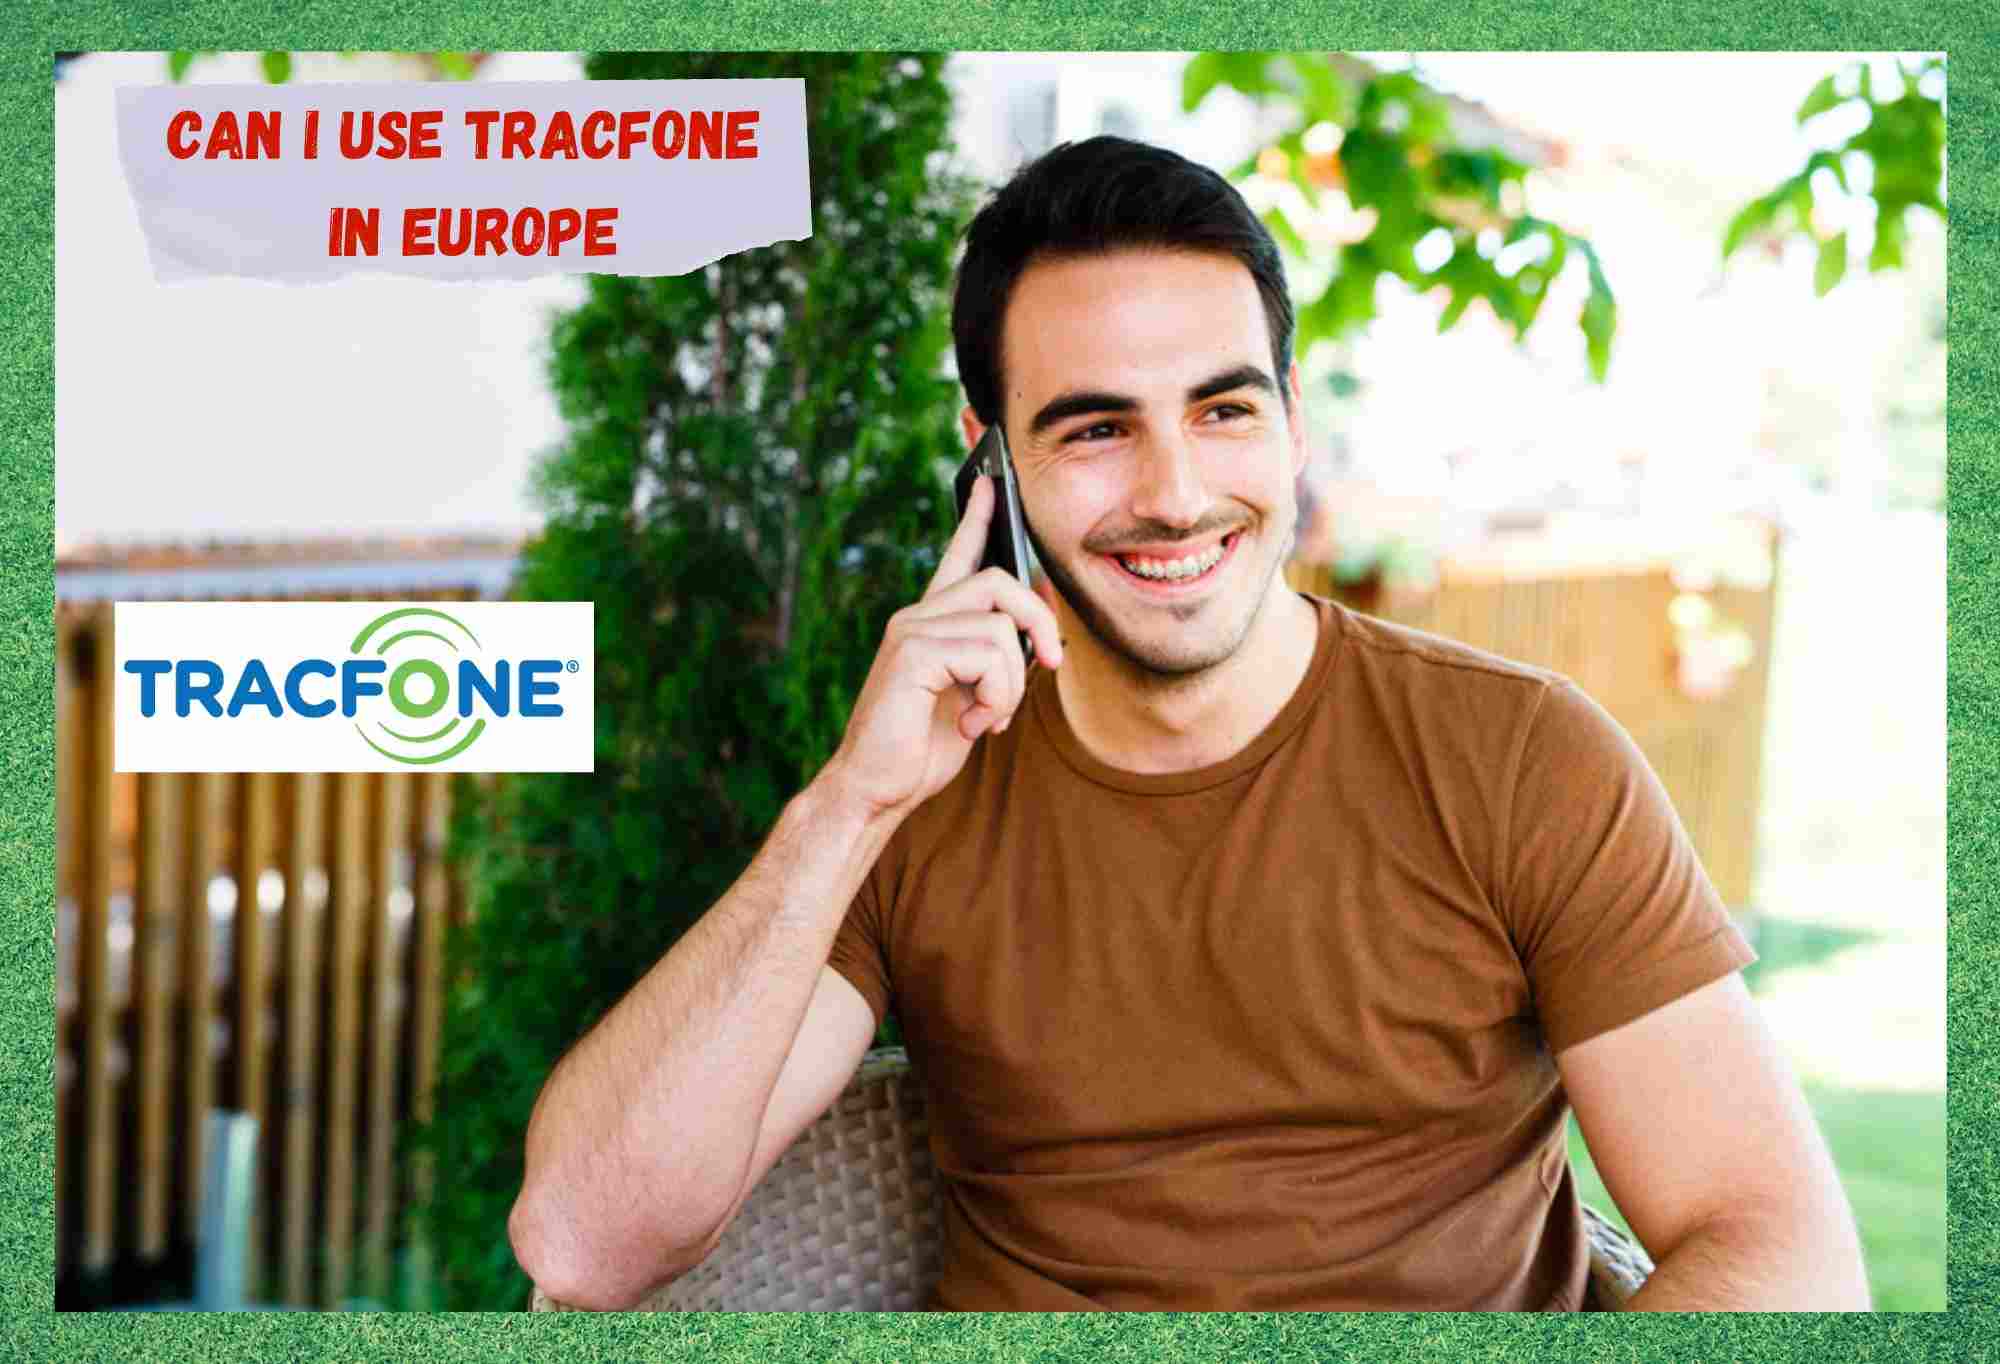 Pot să folosesc TracFone în Europa? (Răspuns)